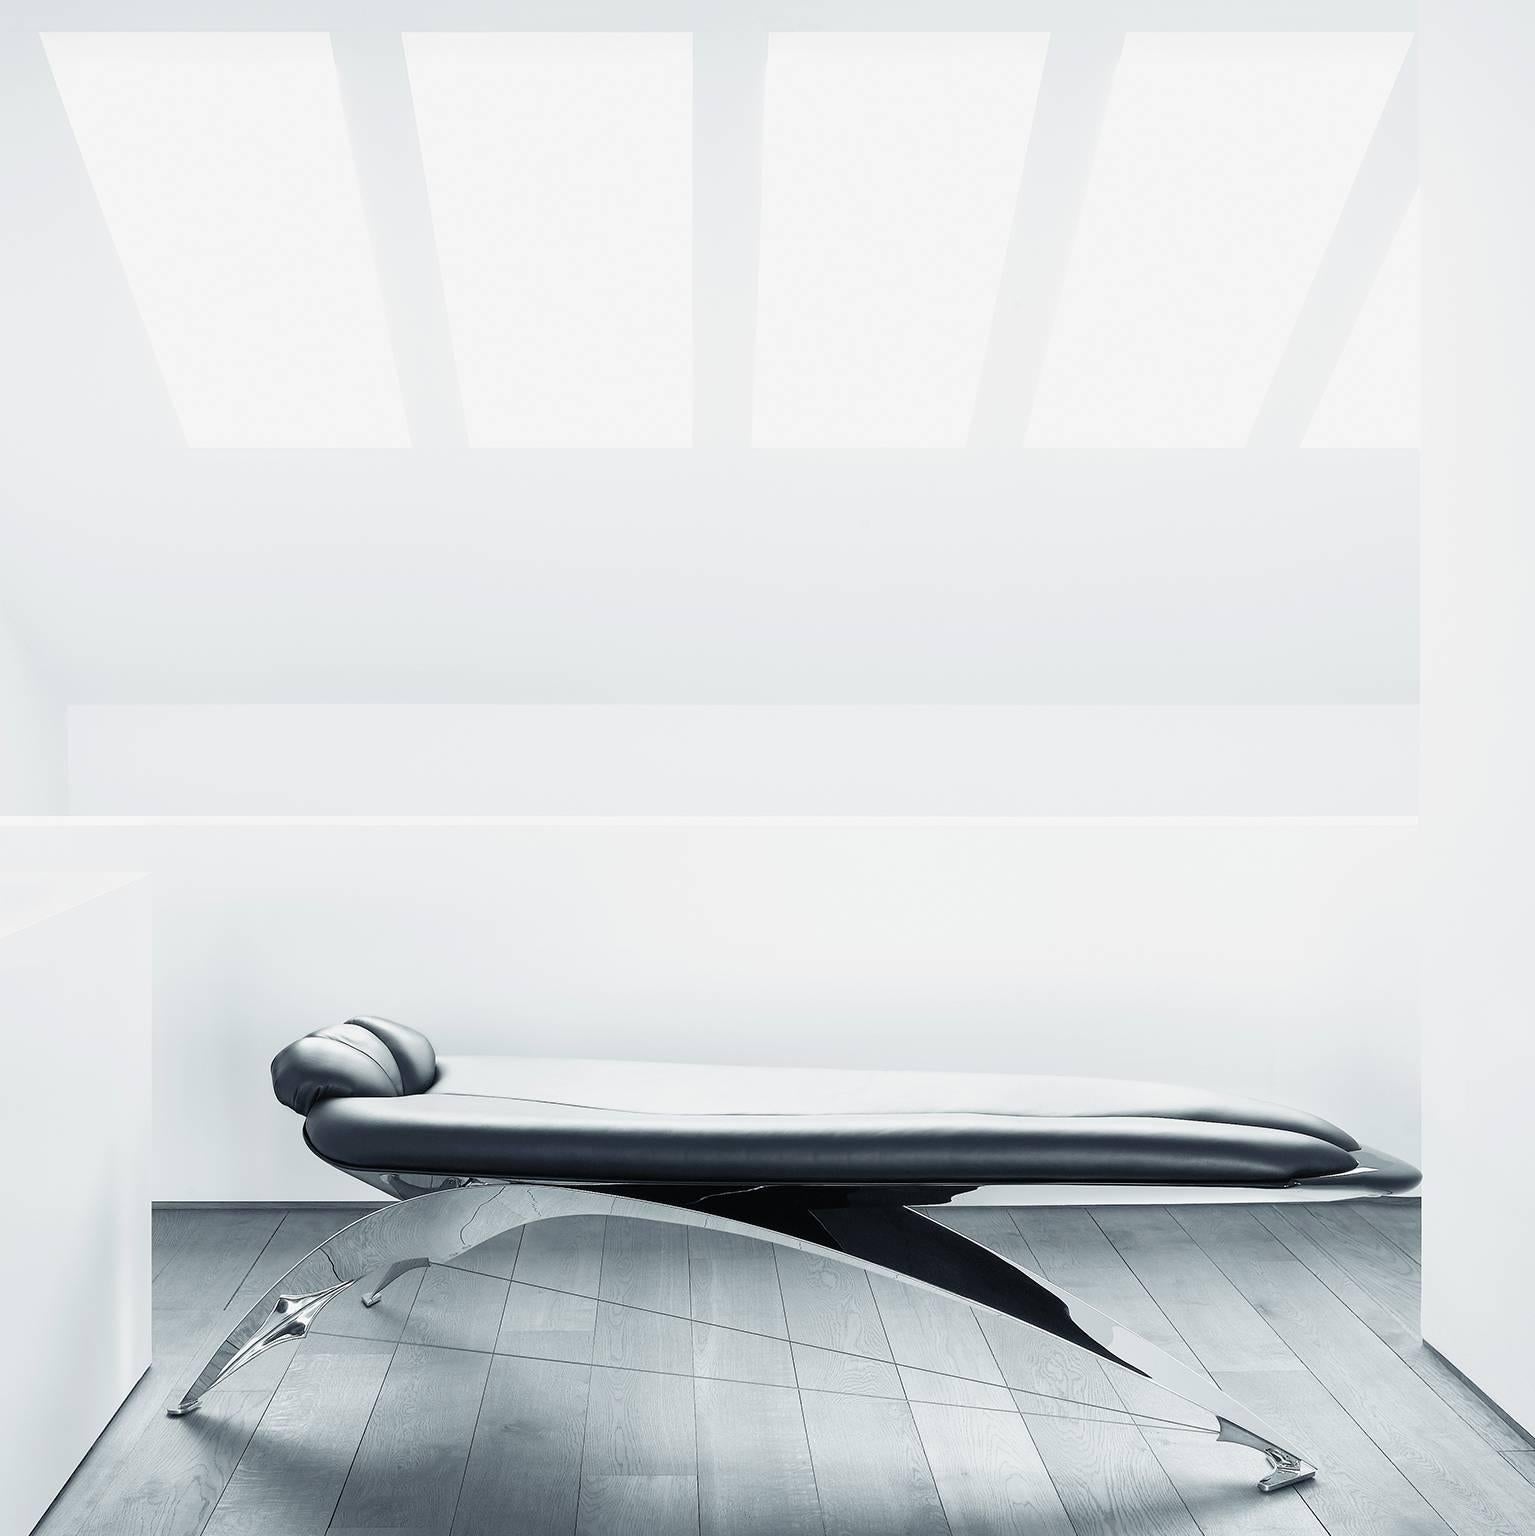 La chaise longue DS-150, créée par l'architecte Santiago Calatrava en 1986, présente un aspect unique, beau et futuriste. Sa forme apparemment flottante s'inspire de la forme du corps humain et est sans compromis tant dans son apparence que dans son